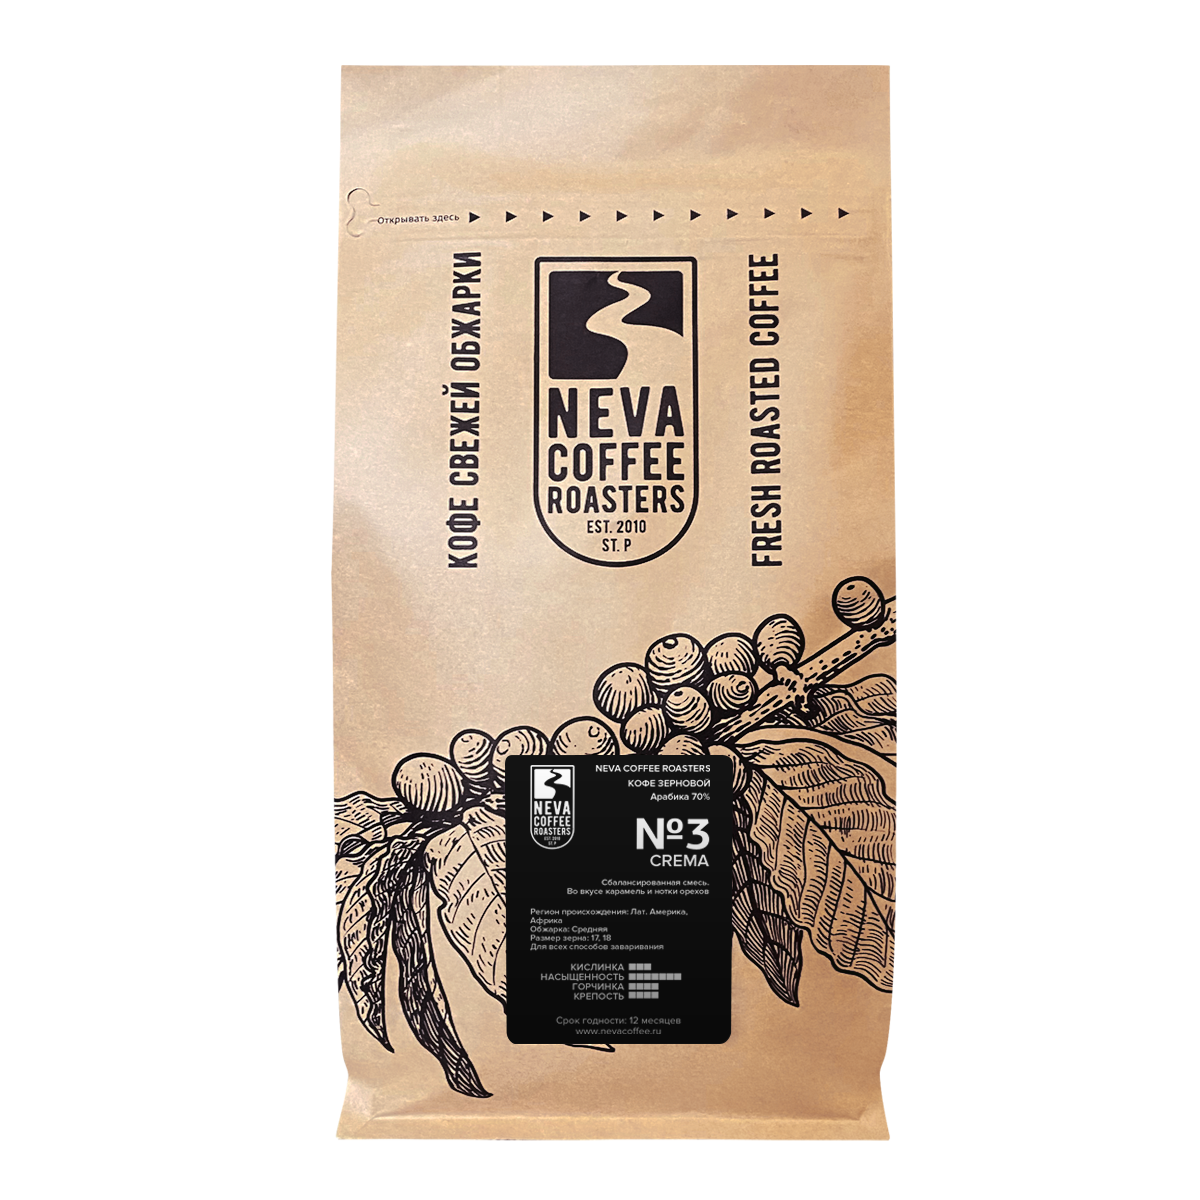 Свежеобжаренный кофе в зернах Neva Coffee Roasters №3 Crema. Крема. 1,00 кг. Арабика 70%/Робуста 30%